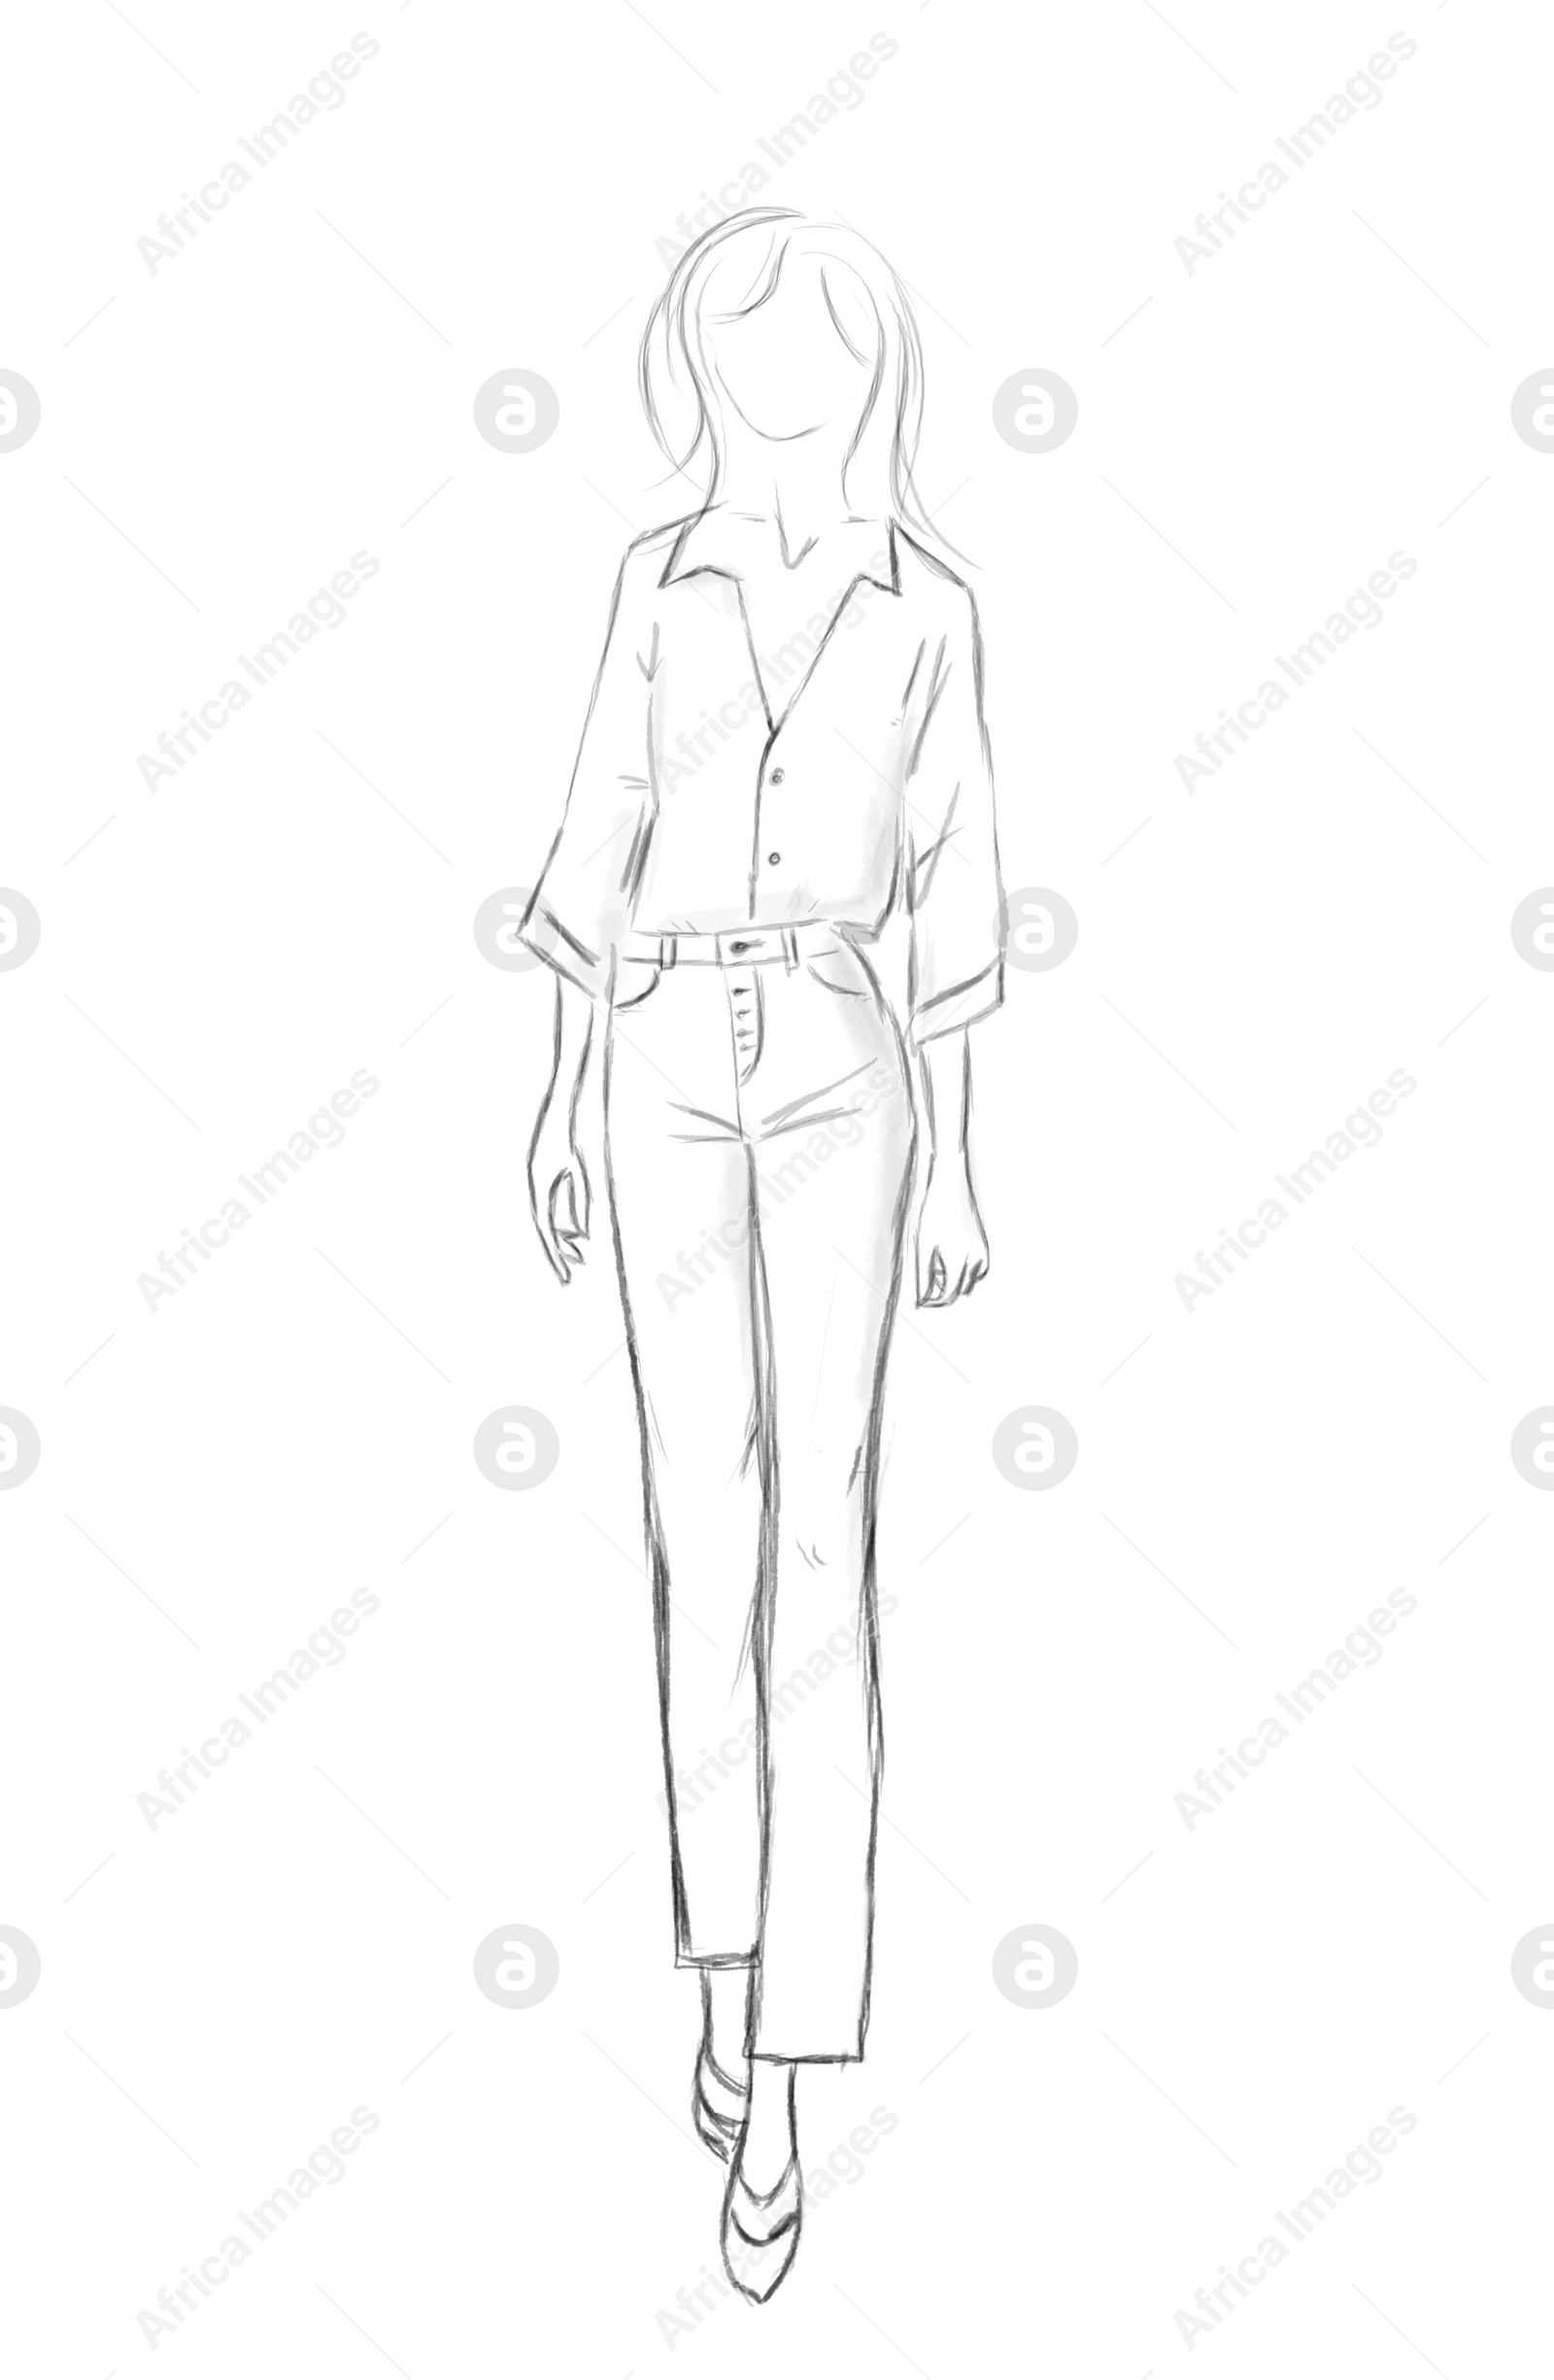 Illustration of Fashion sketch. Model wearing stylish clothes on white background, illustration